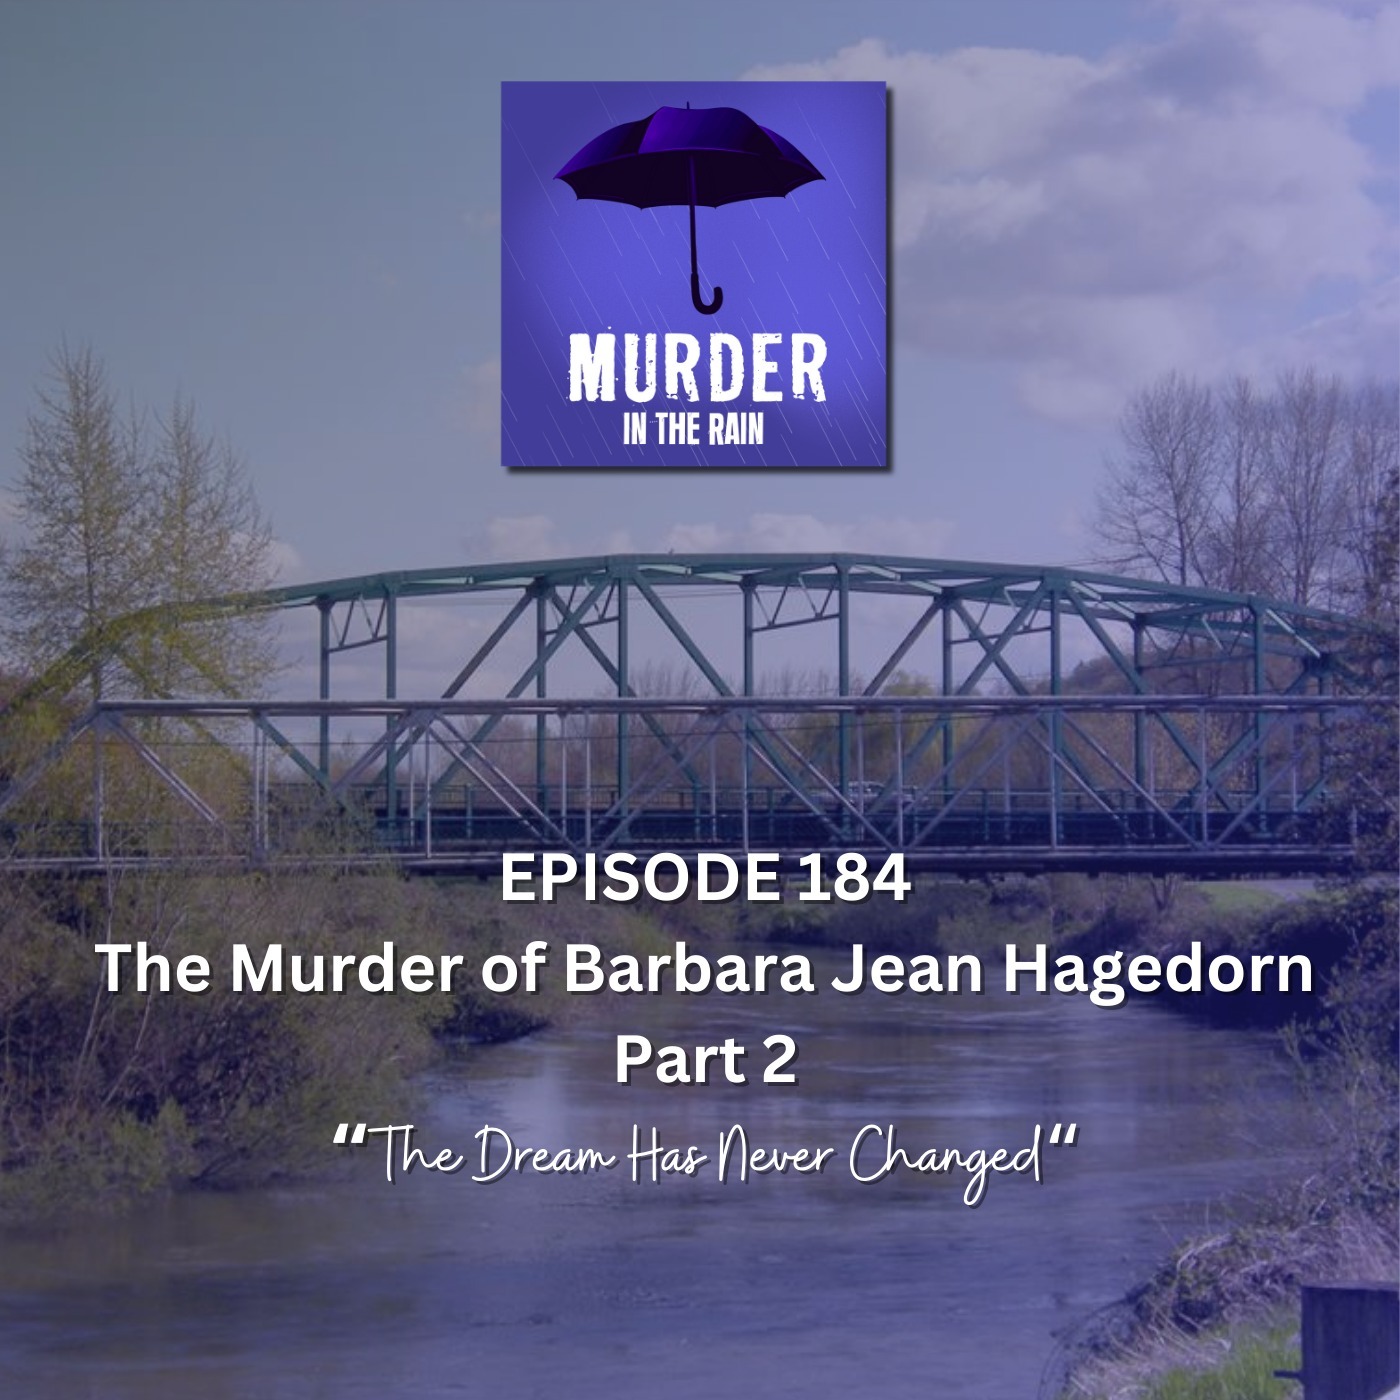 The Murder of Barbara Jean Hagedorn Part 2